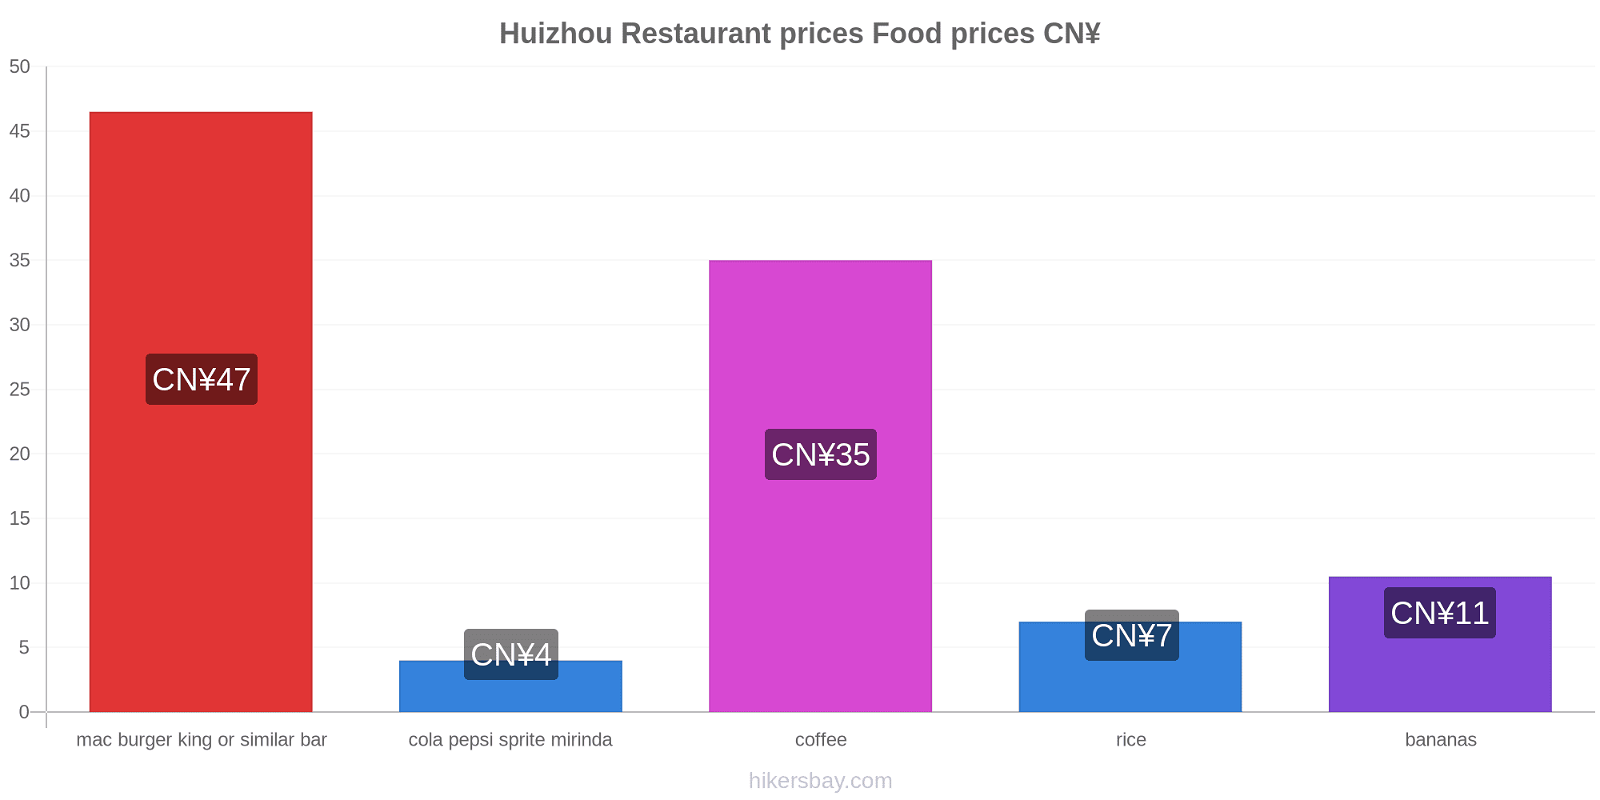 Huizhou price changes hikersbay.com